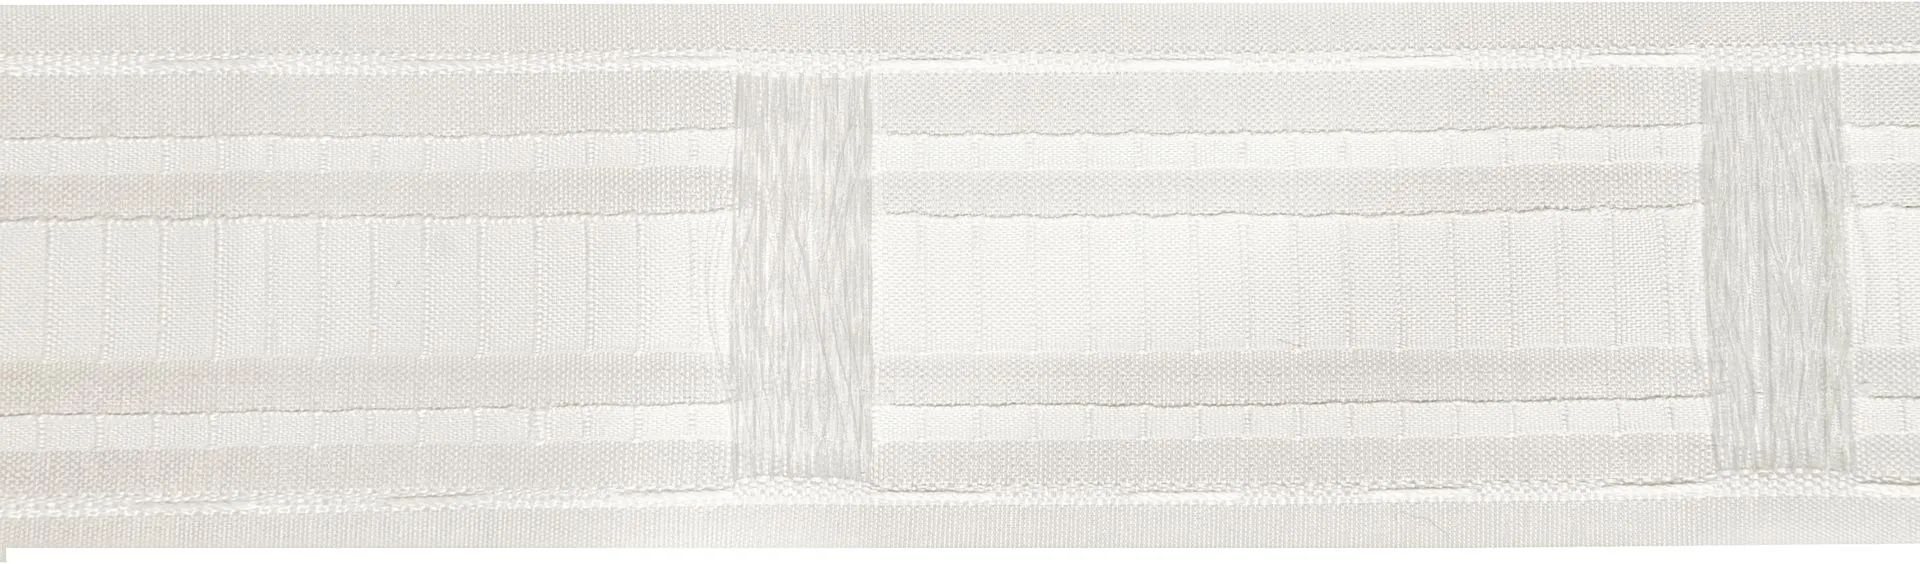 Sivuverho Combonauha valkoinen, polyesteri 3,4m - 1